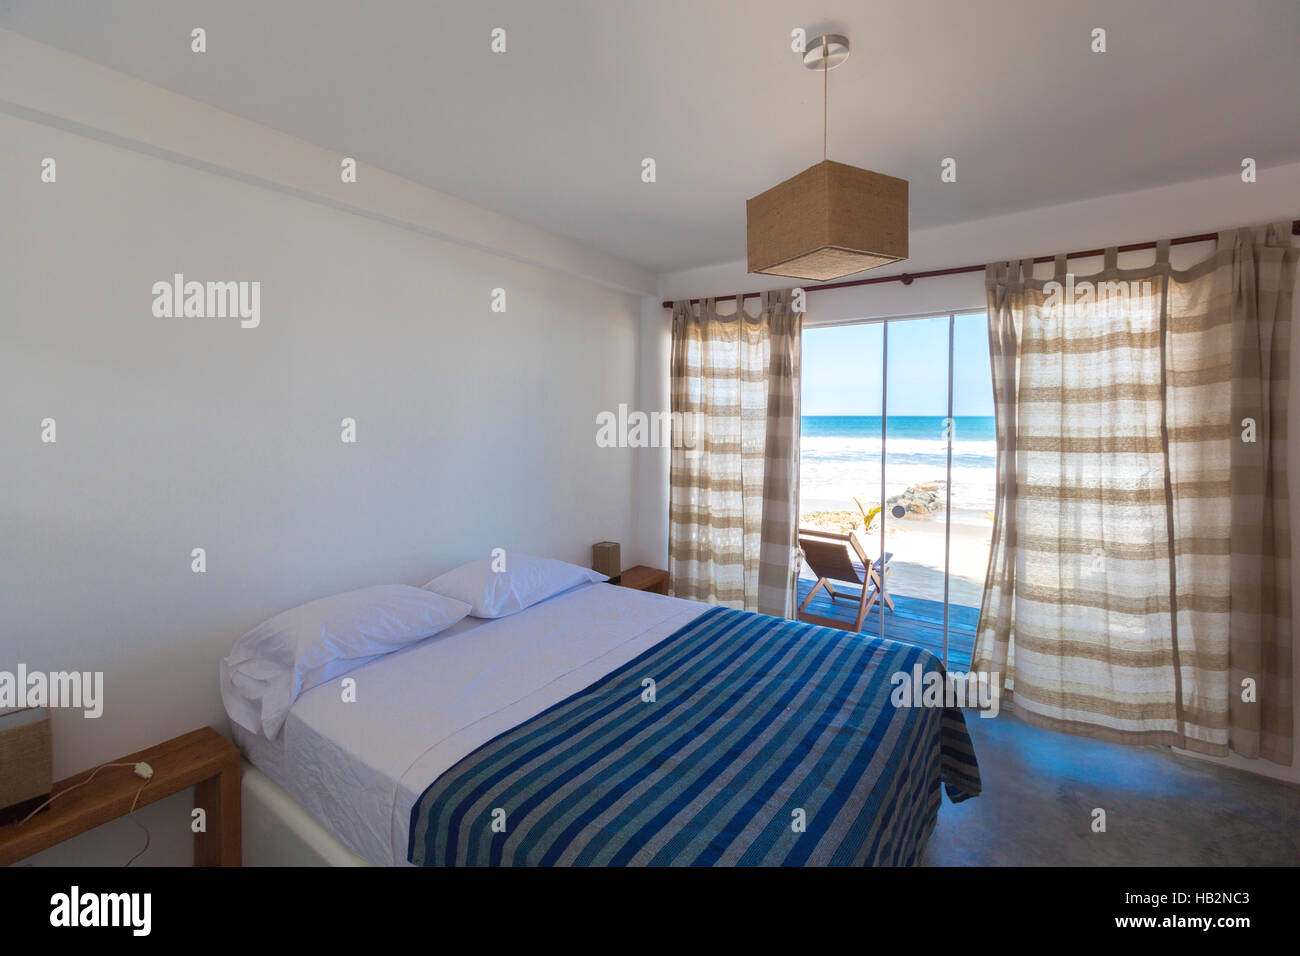 PUNTA SAL, PERU, 28.Januar: Innenraum mit Bett, Luxus romantischer Ort für Flitterwochen, schönen Bungalow am Strand, Liegestuhl auf der Terrasse, V Stockfoto